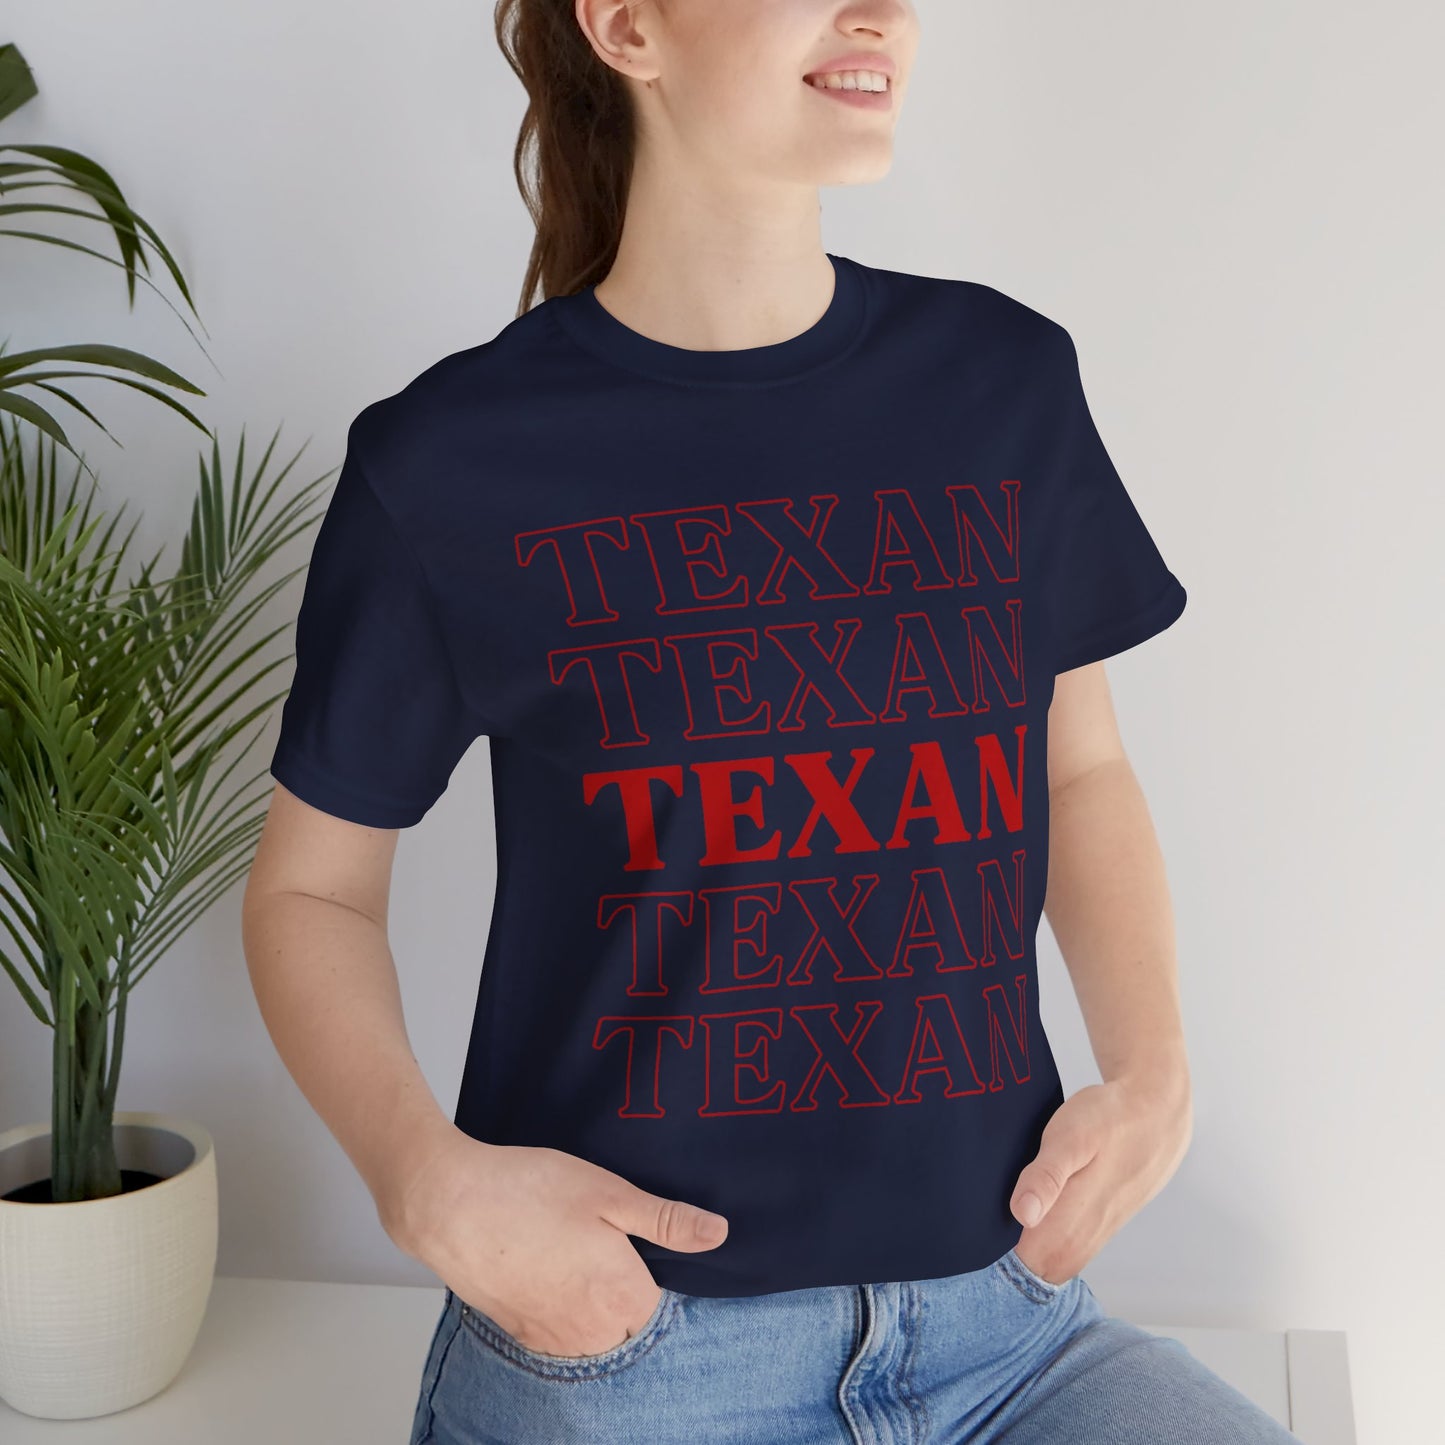 Camiseta unisex texana